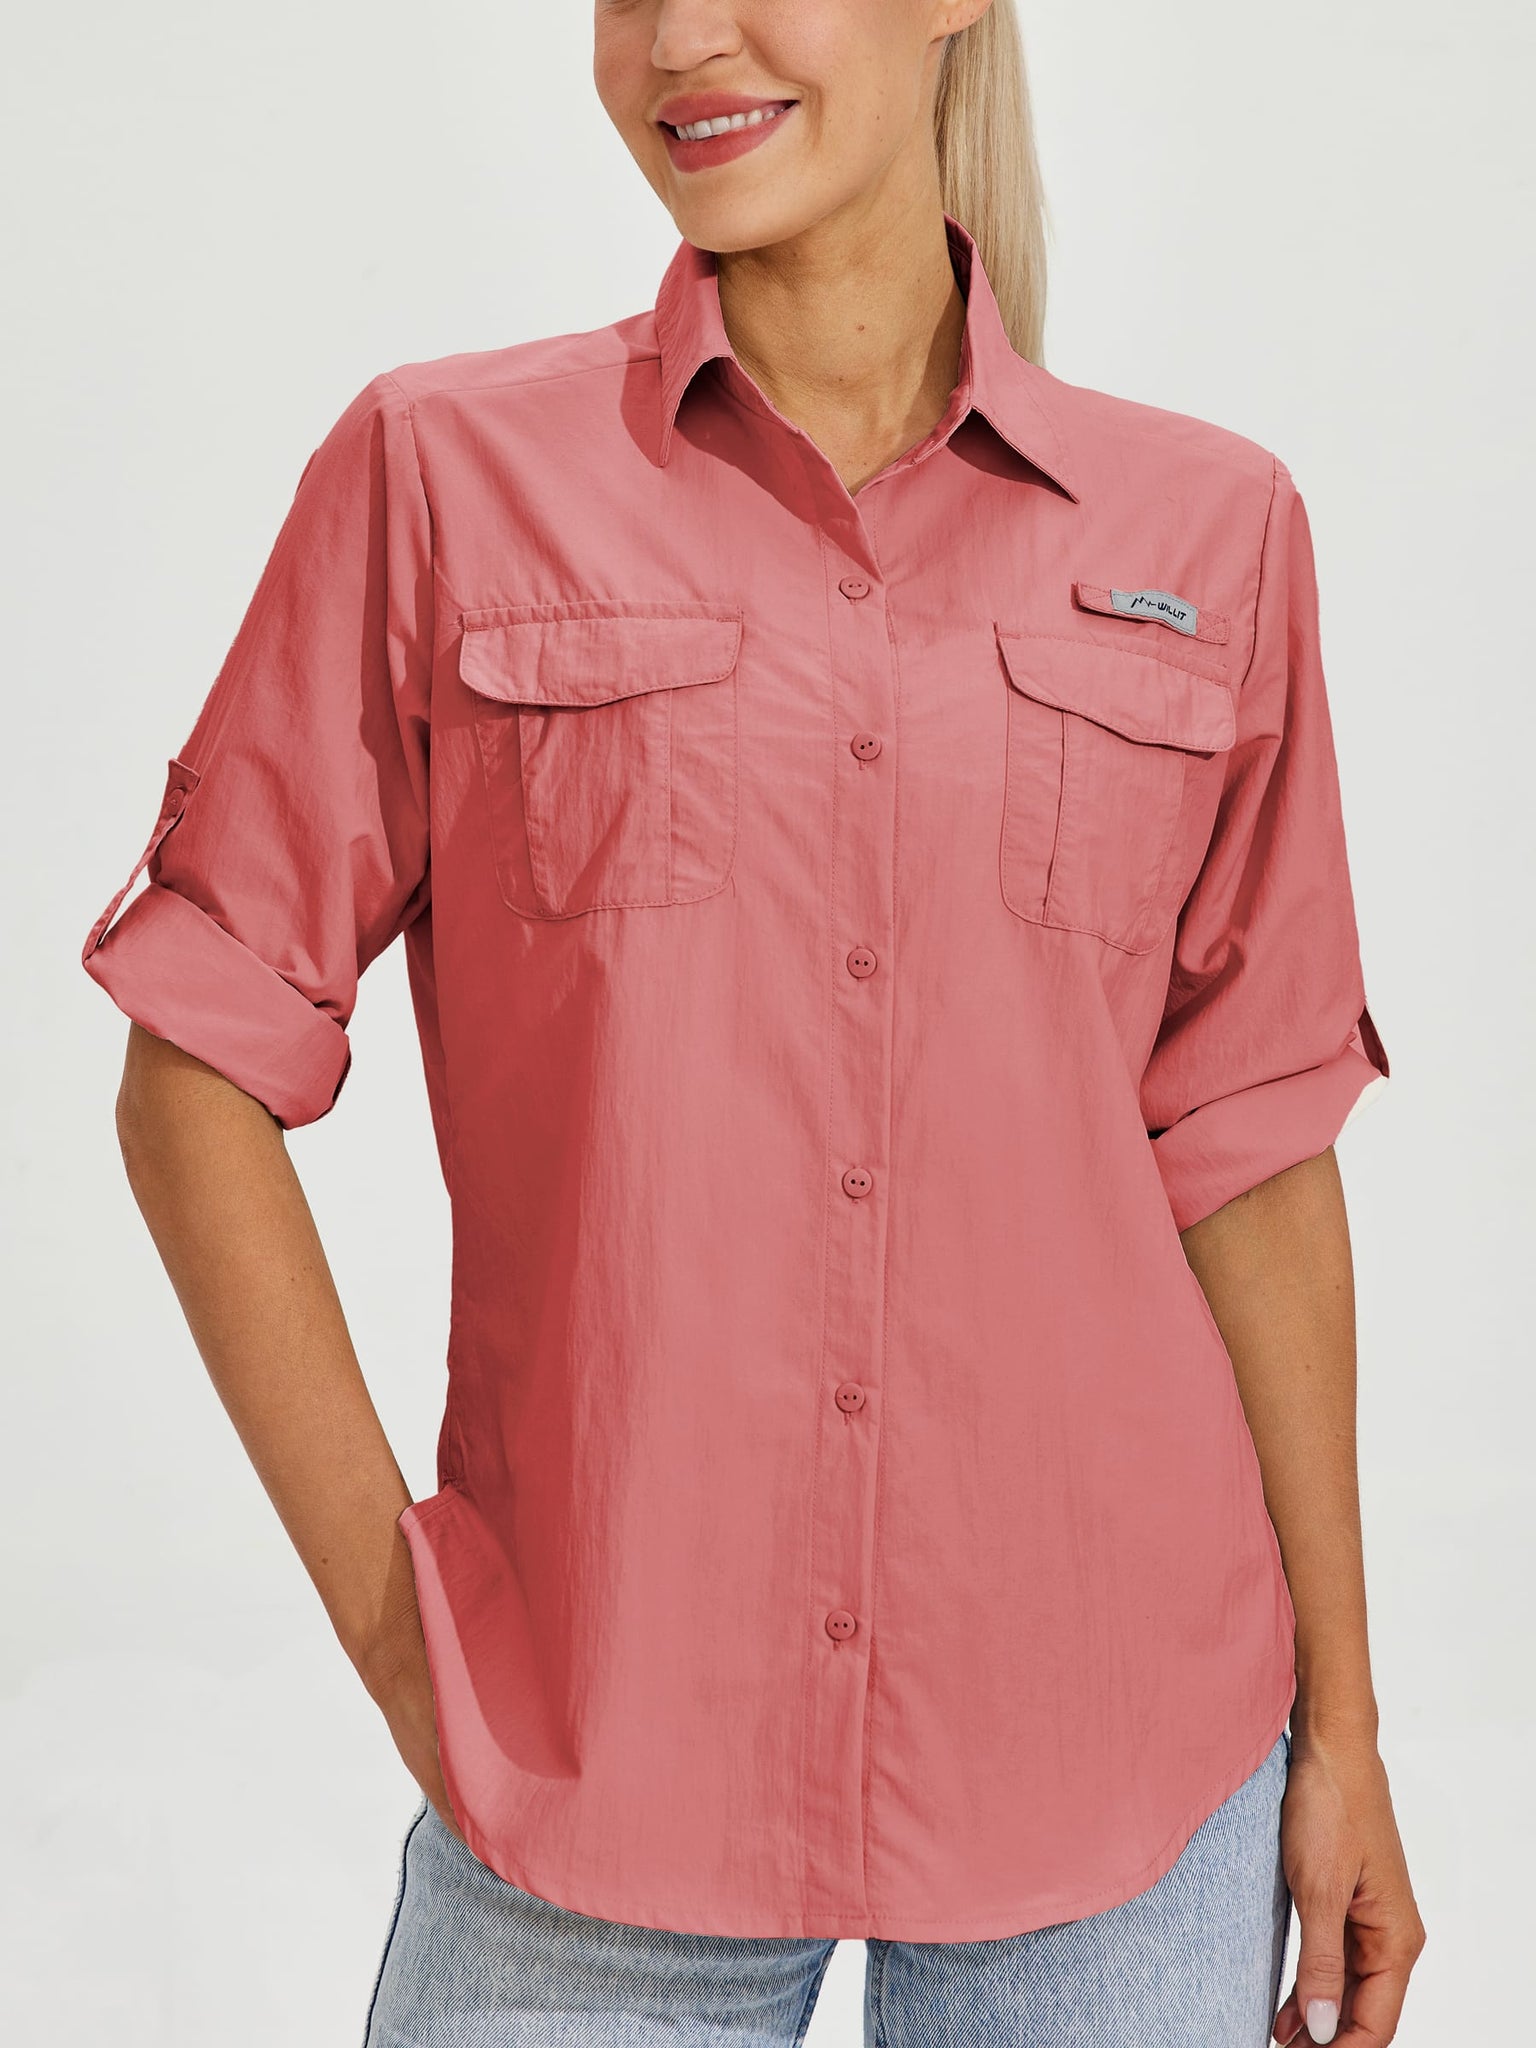 Women's Long Sleeve Fishing Shirt_Pink_model6